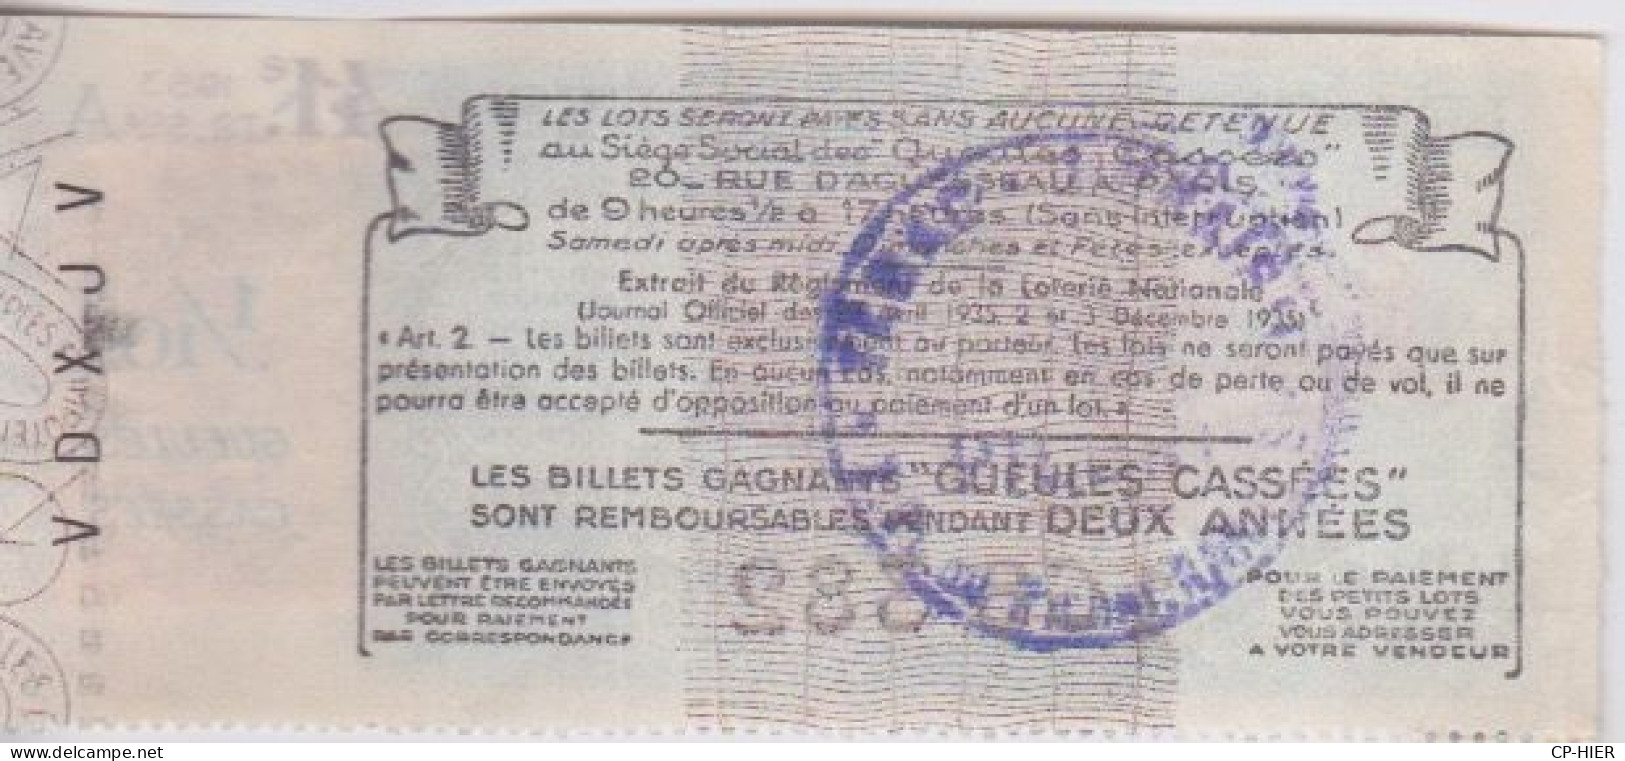 BILLET DE LOTERIE NATIONALE - LES GUEULES CASSEES - + VIGNETTE  1953 + CACHET AU DOS - Loterijbiljetten